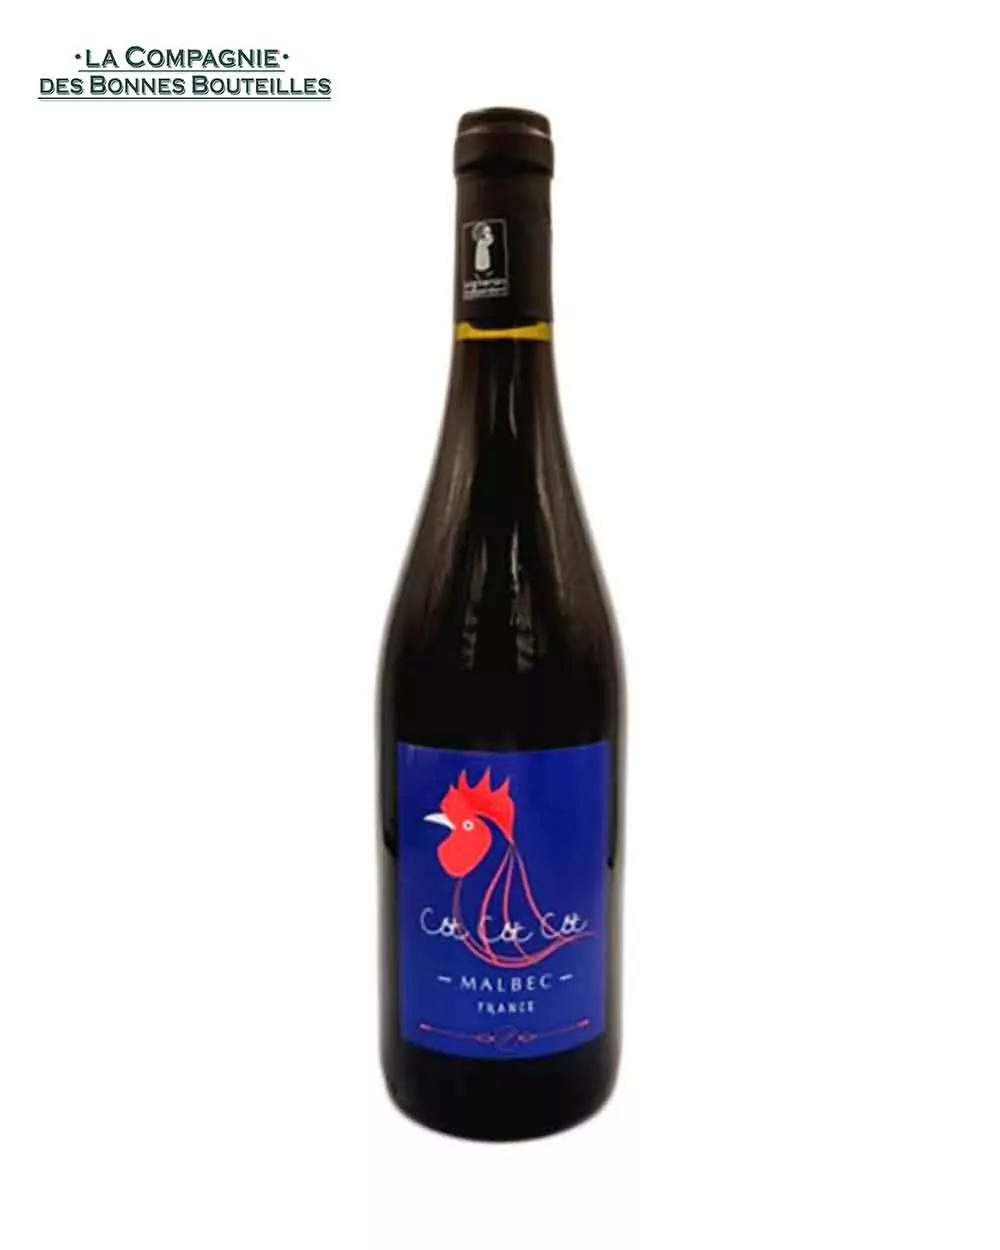 Vin Rouge - Vignobles Pelvillain - Côt Côt Côt - IGP Côtes du lot - 2020 - 75cl